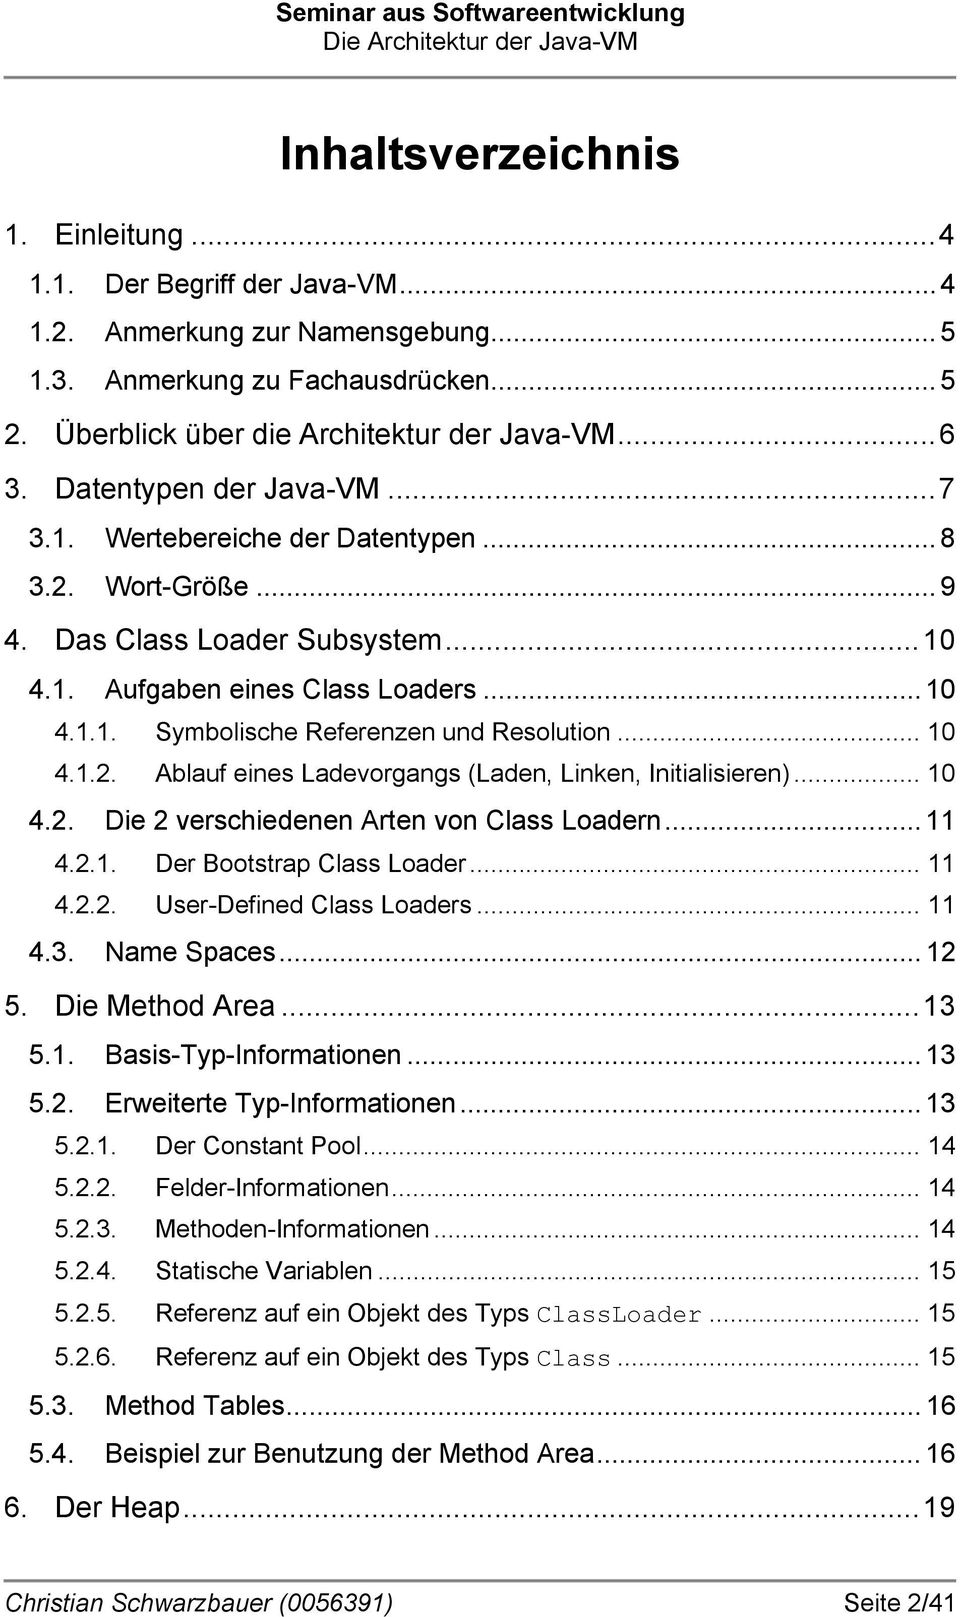 .. 10 4.1.2. Ablauf eines Ladevorgangs (Laden, Linken, Initialisieren)... 10 4.2. Die 2 verschiedenen Arten von Class Loadern... 11 4.2.1. Der Bootstrap Class Loader... 11 4.2.2. User-Defined Class Loaders.